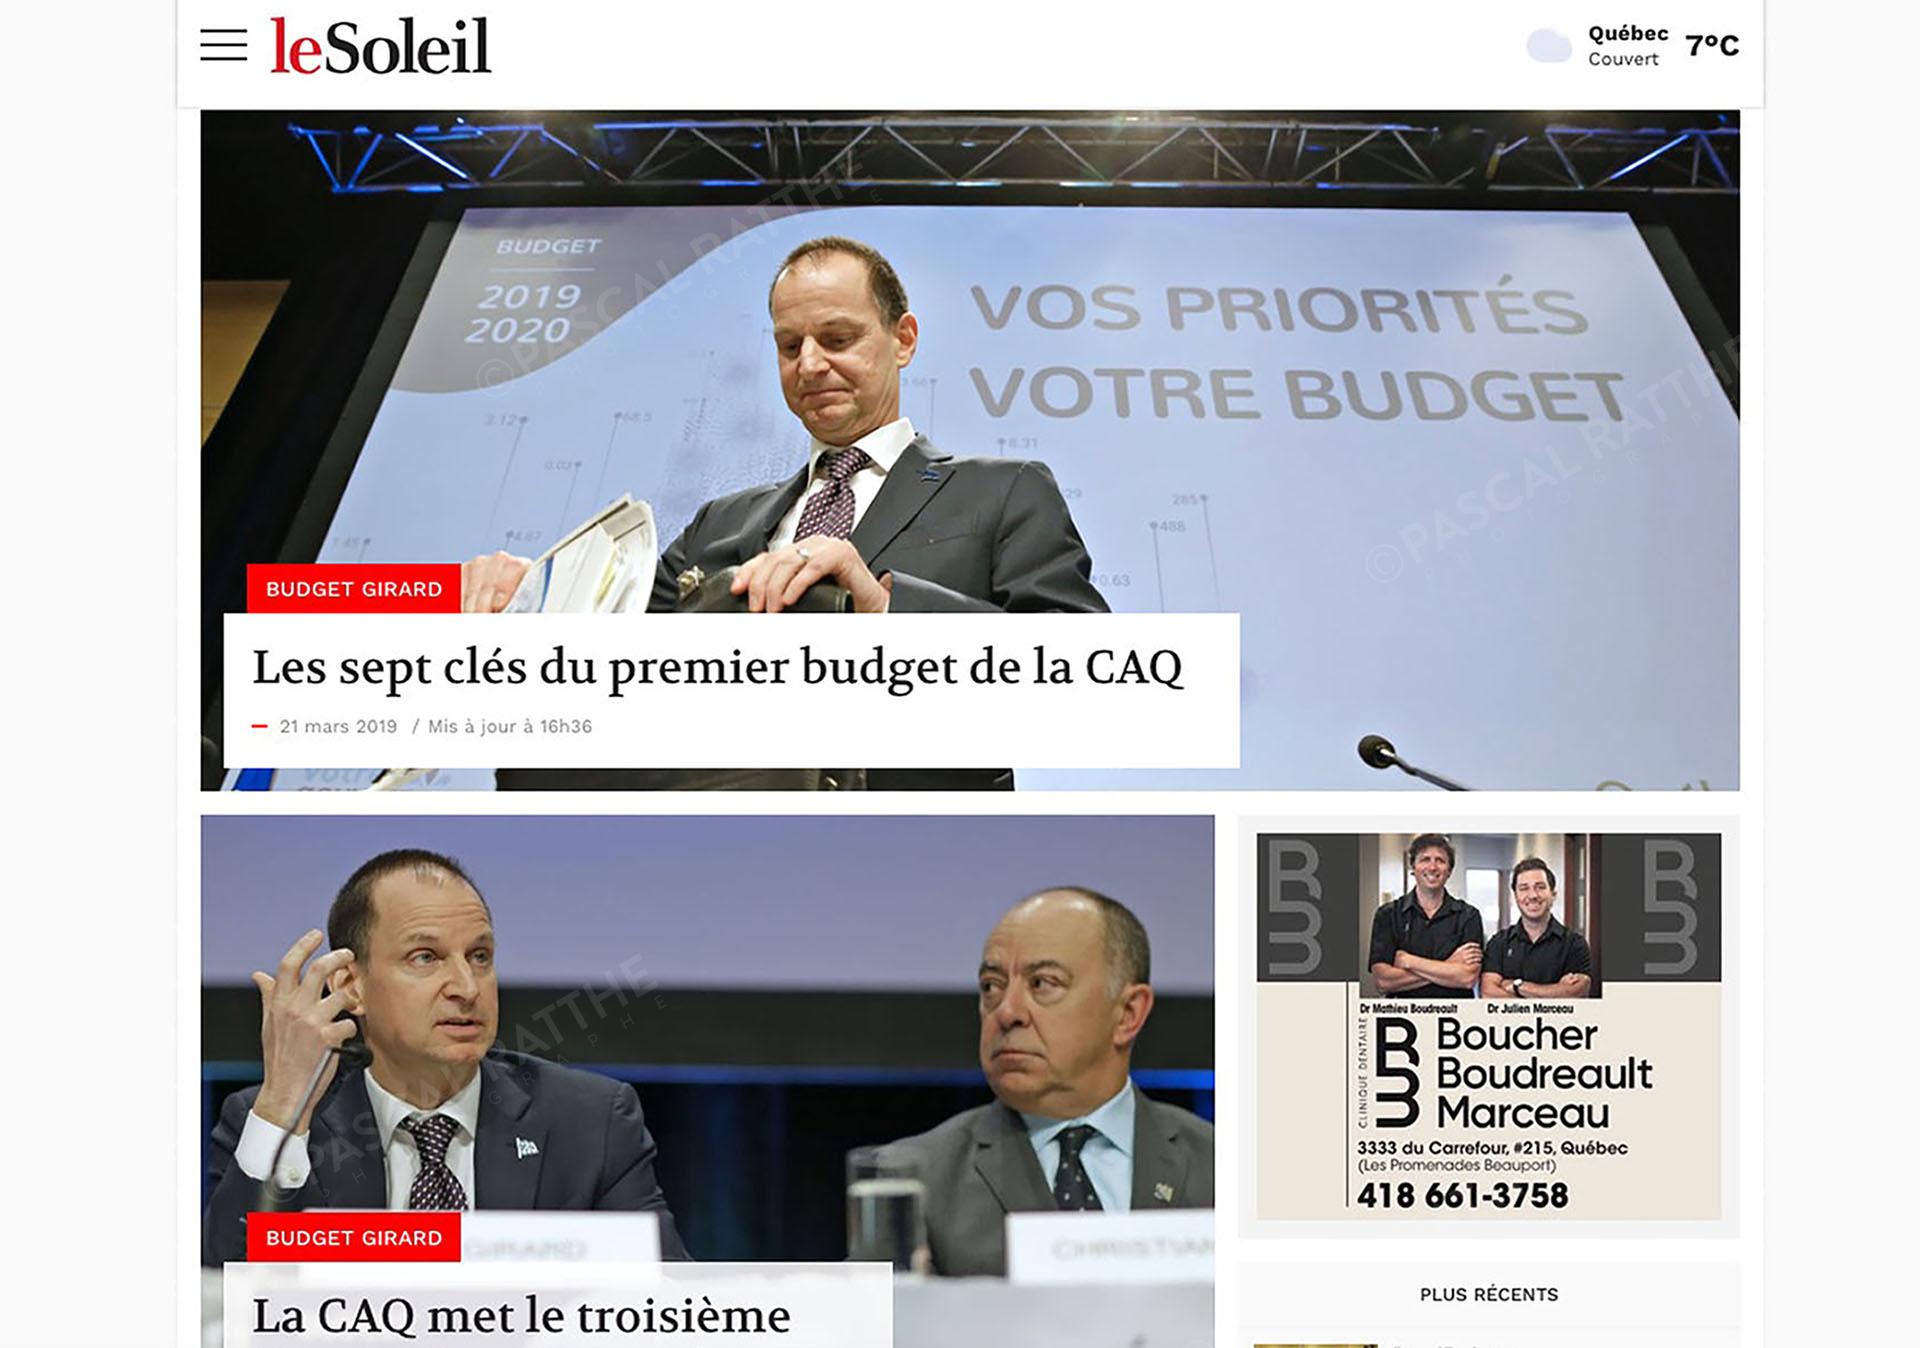 le ministre des finances eric girard et Christian dubé présente le premier budget 2019 de la CAQ durant le huit-clos